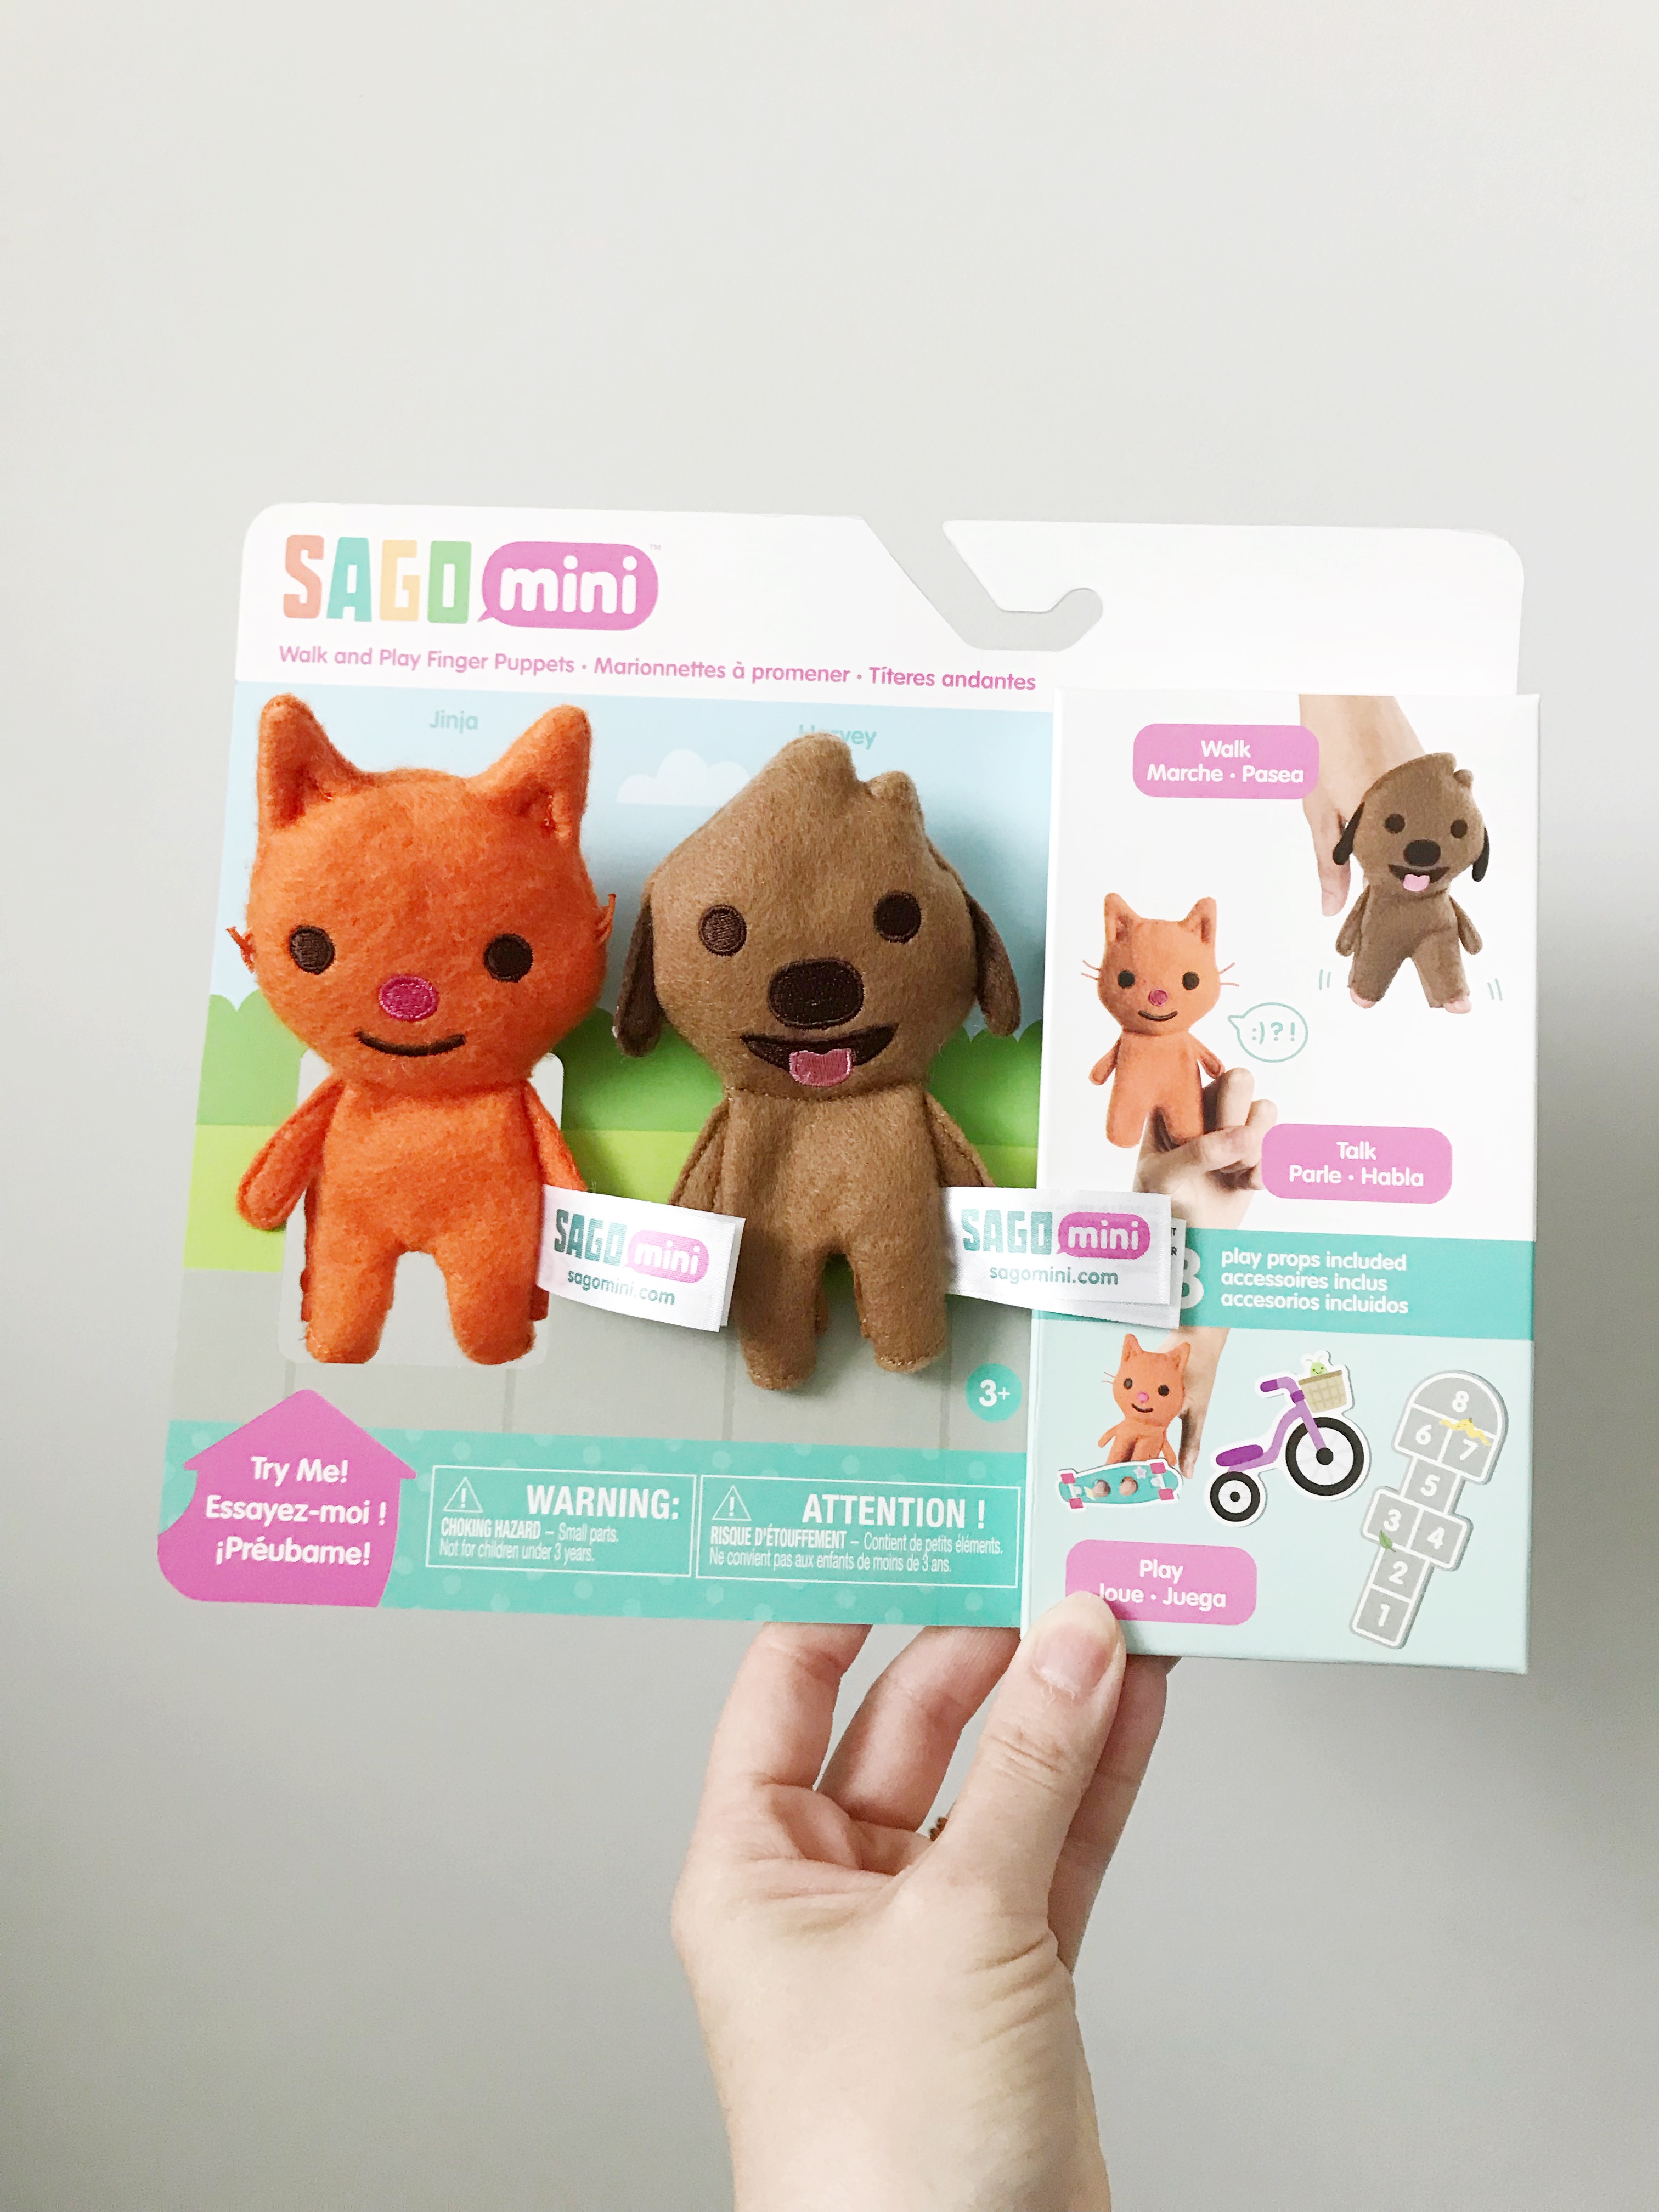 The Sago Mini Box - One Happy Mama